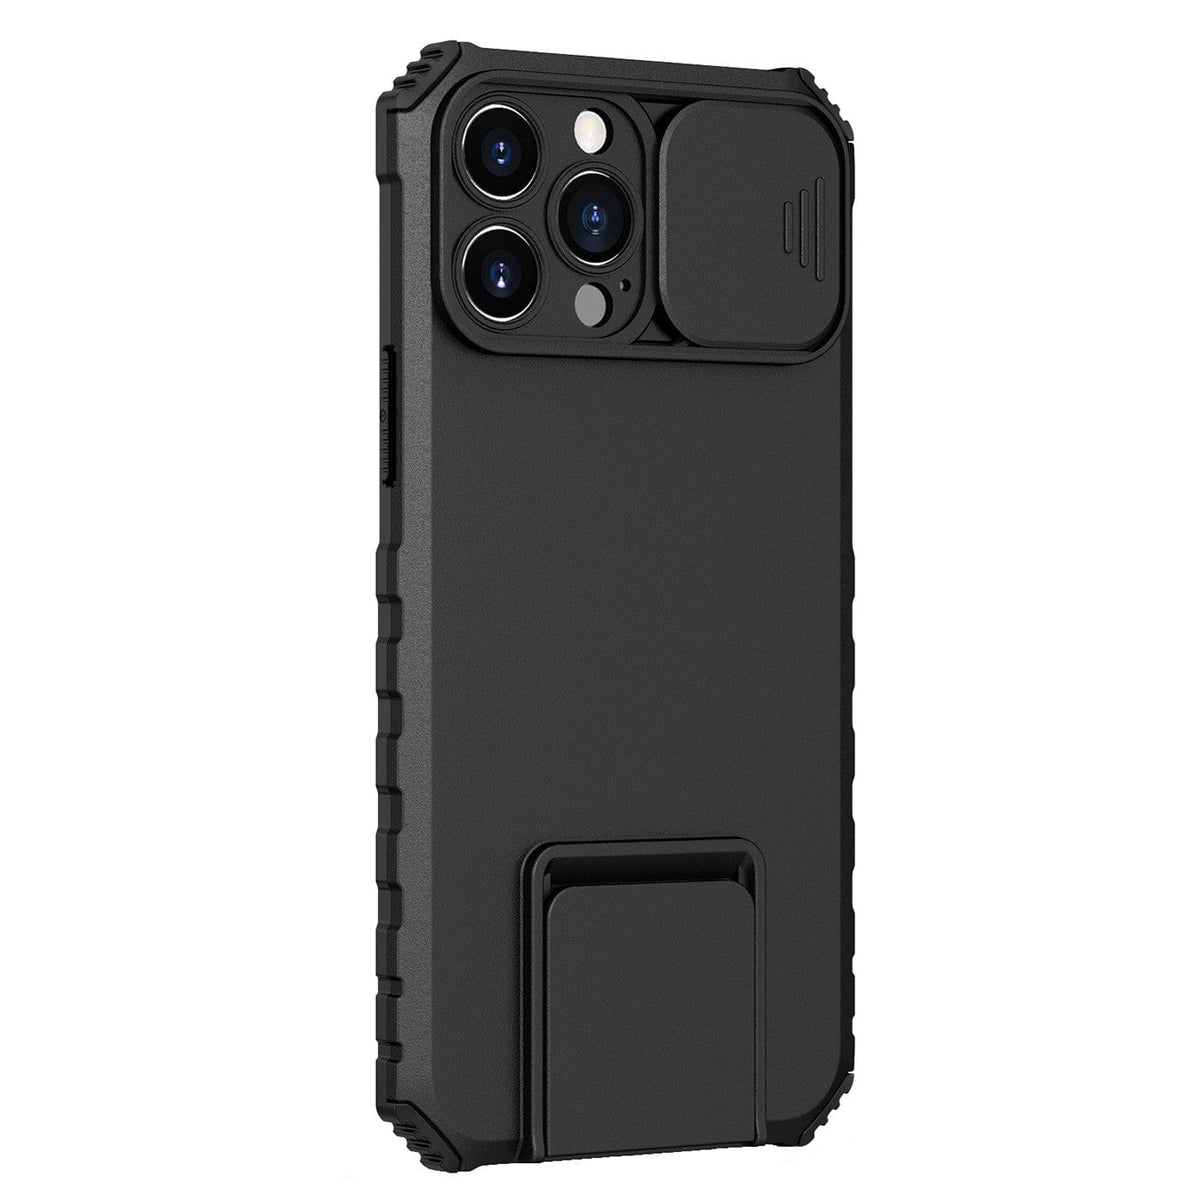 Husa Defender cu Stand pentru iPhone 12 Pro, Negru, Suport reglabil, Antisoc, Protectie glisanta pentru camera,